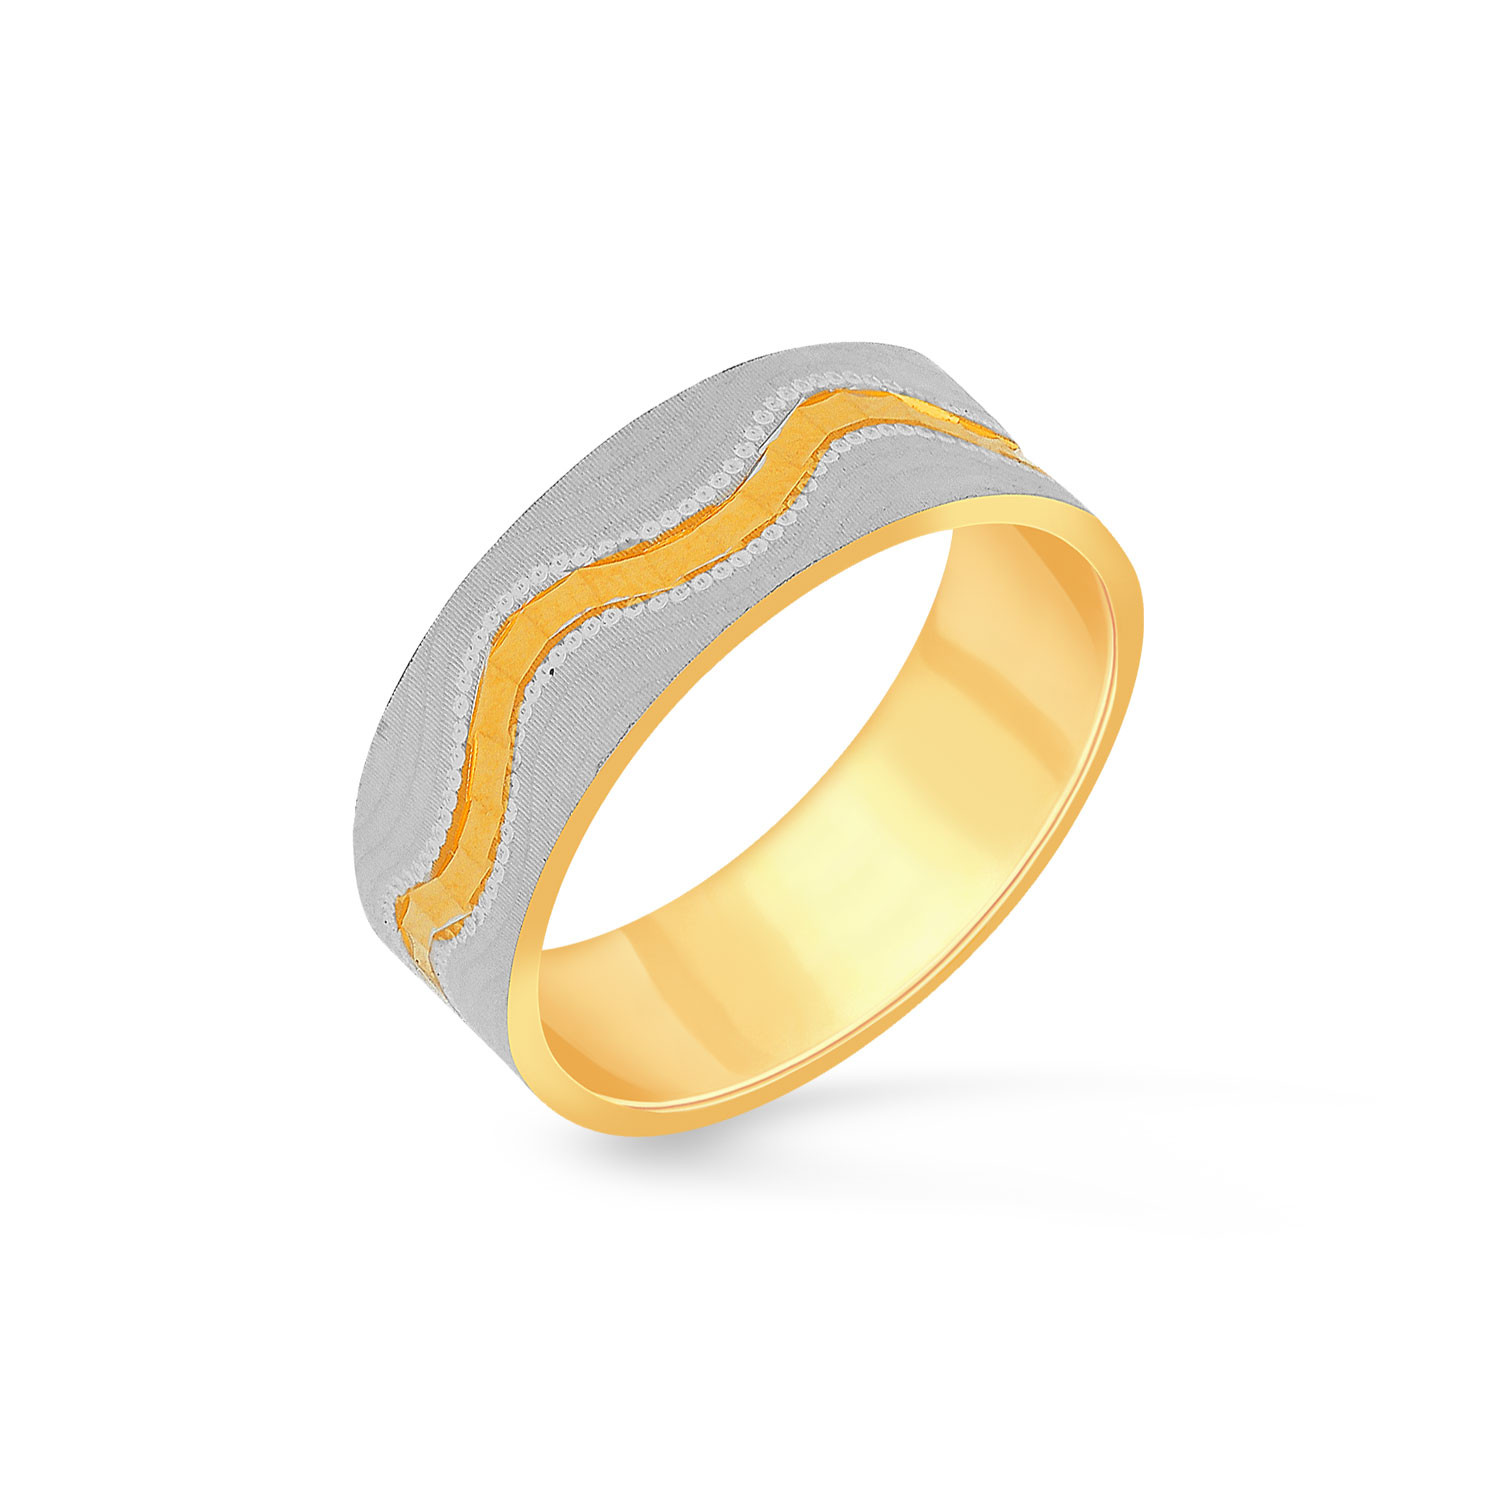 Malabar Gold Ring USLARNCPL002G